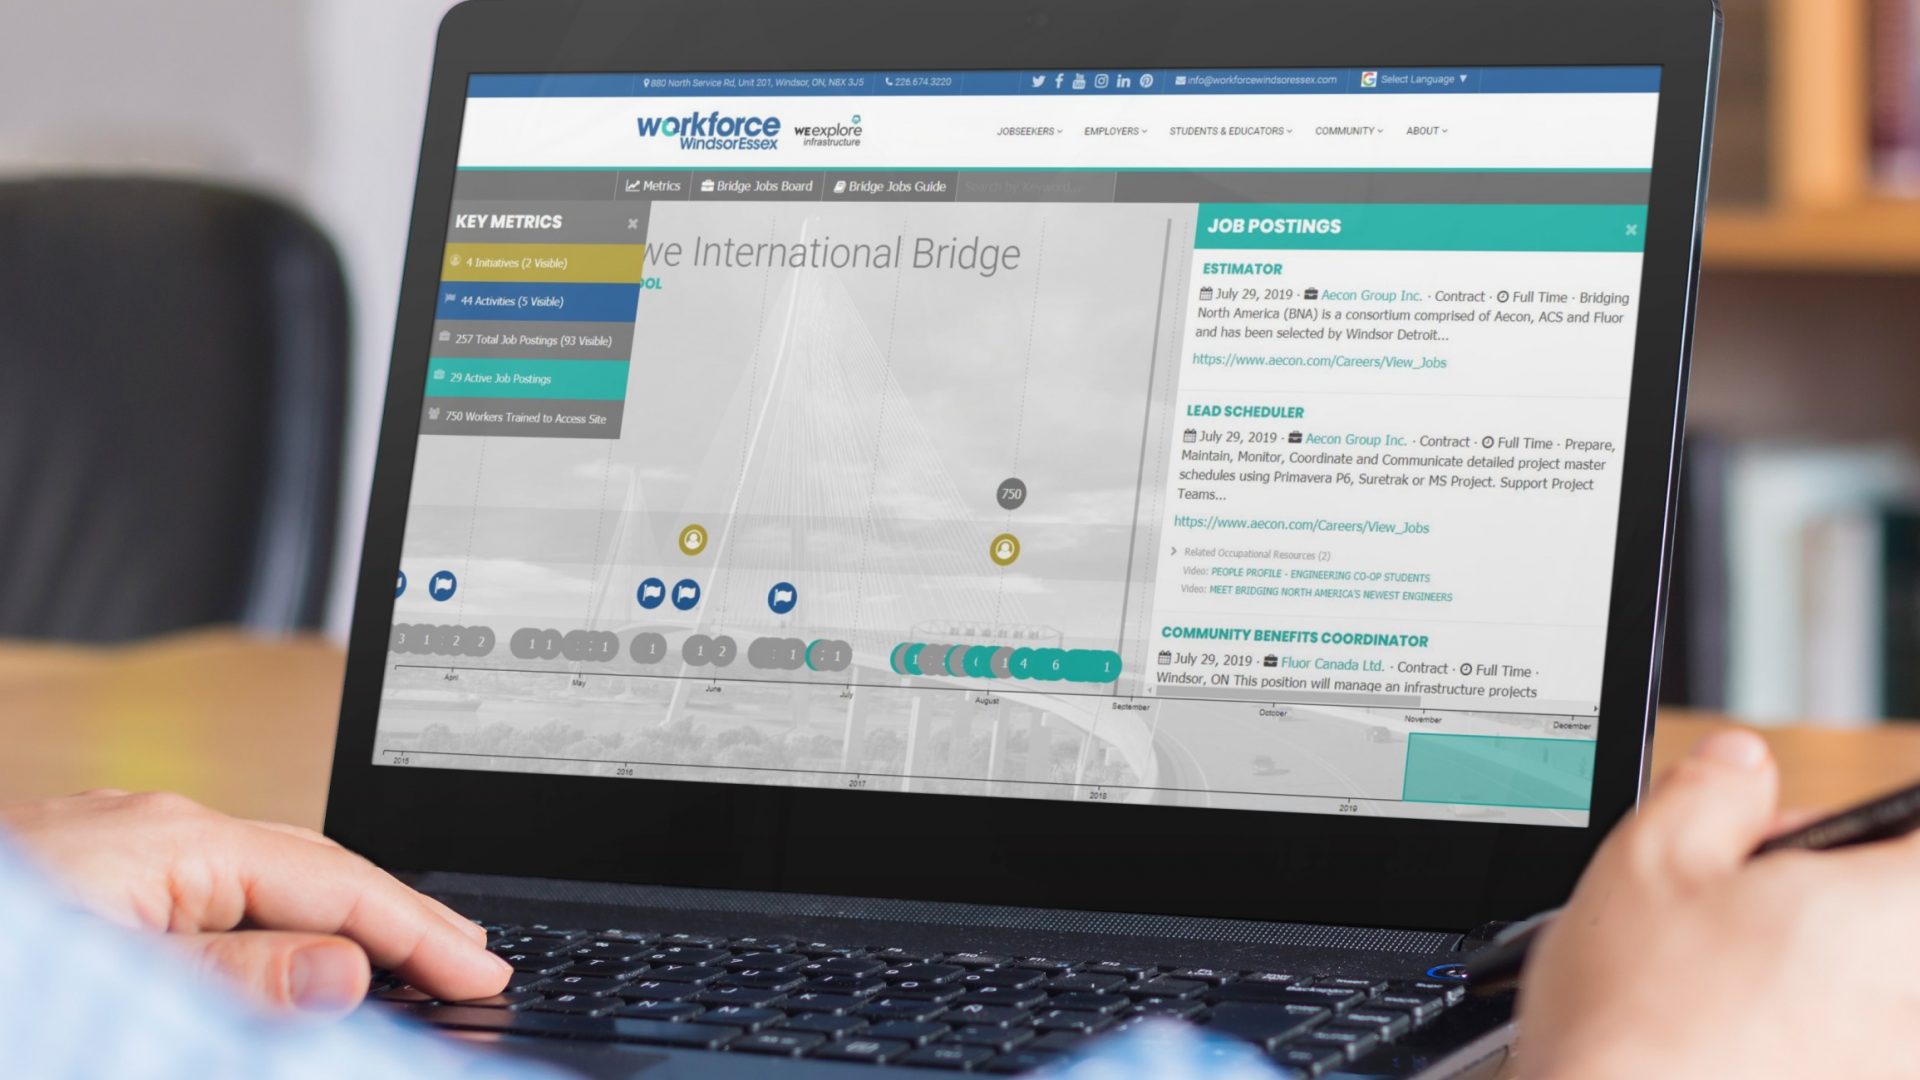 Gordie Howe International Bridge Workforce Timeline Tool on laptop